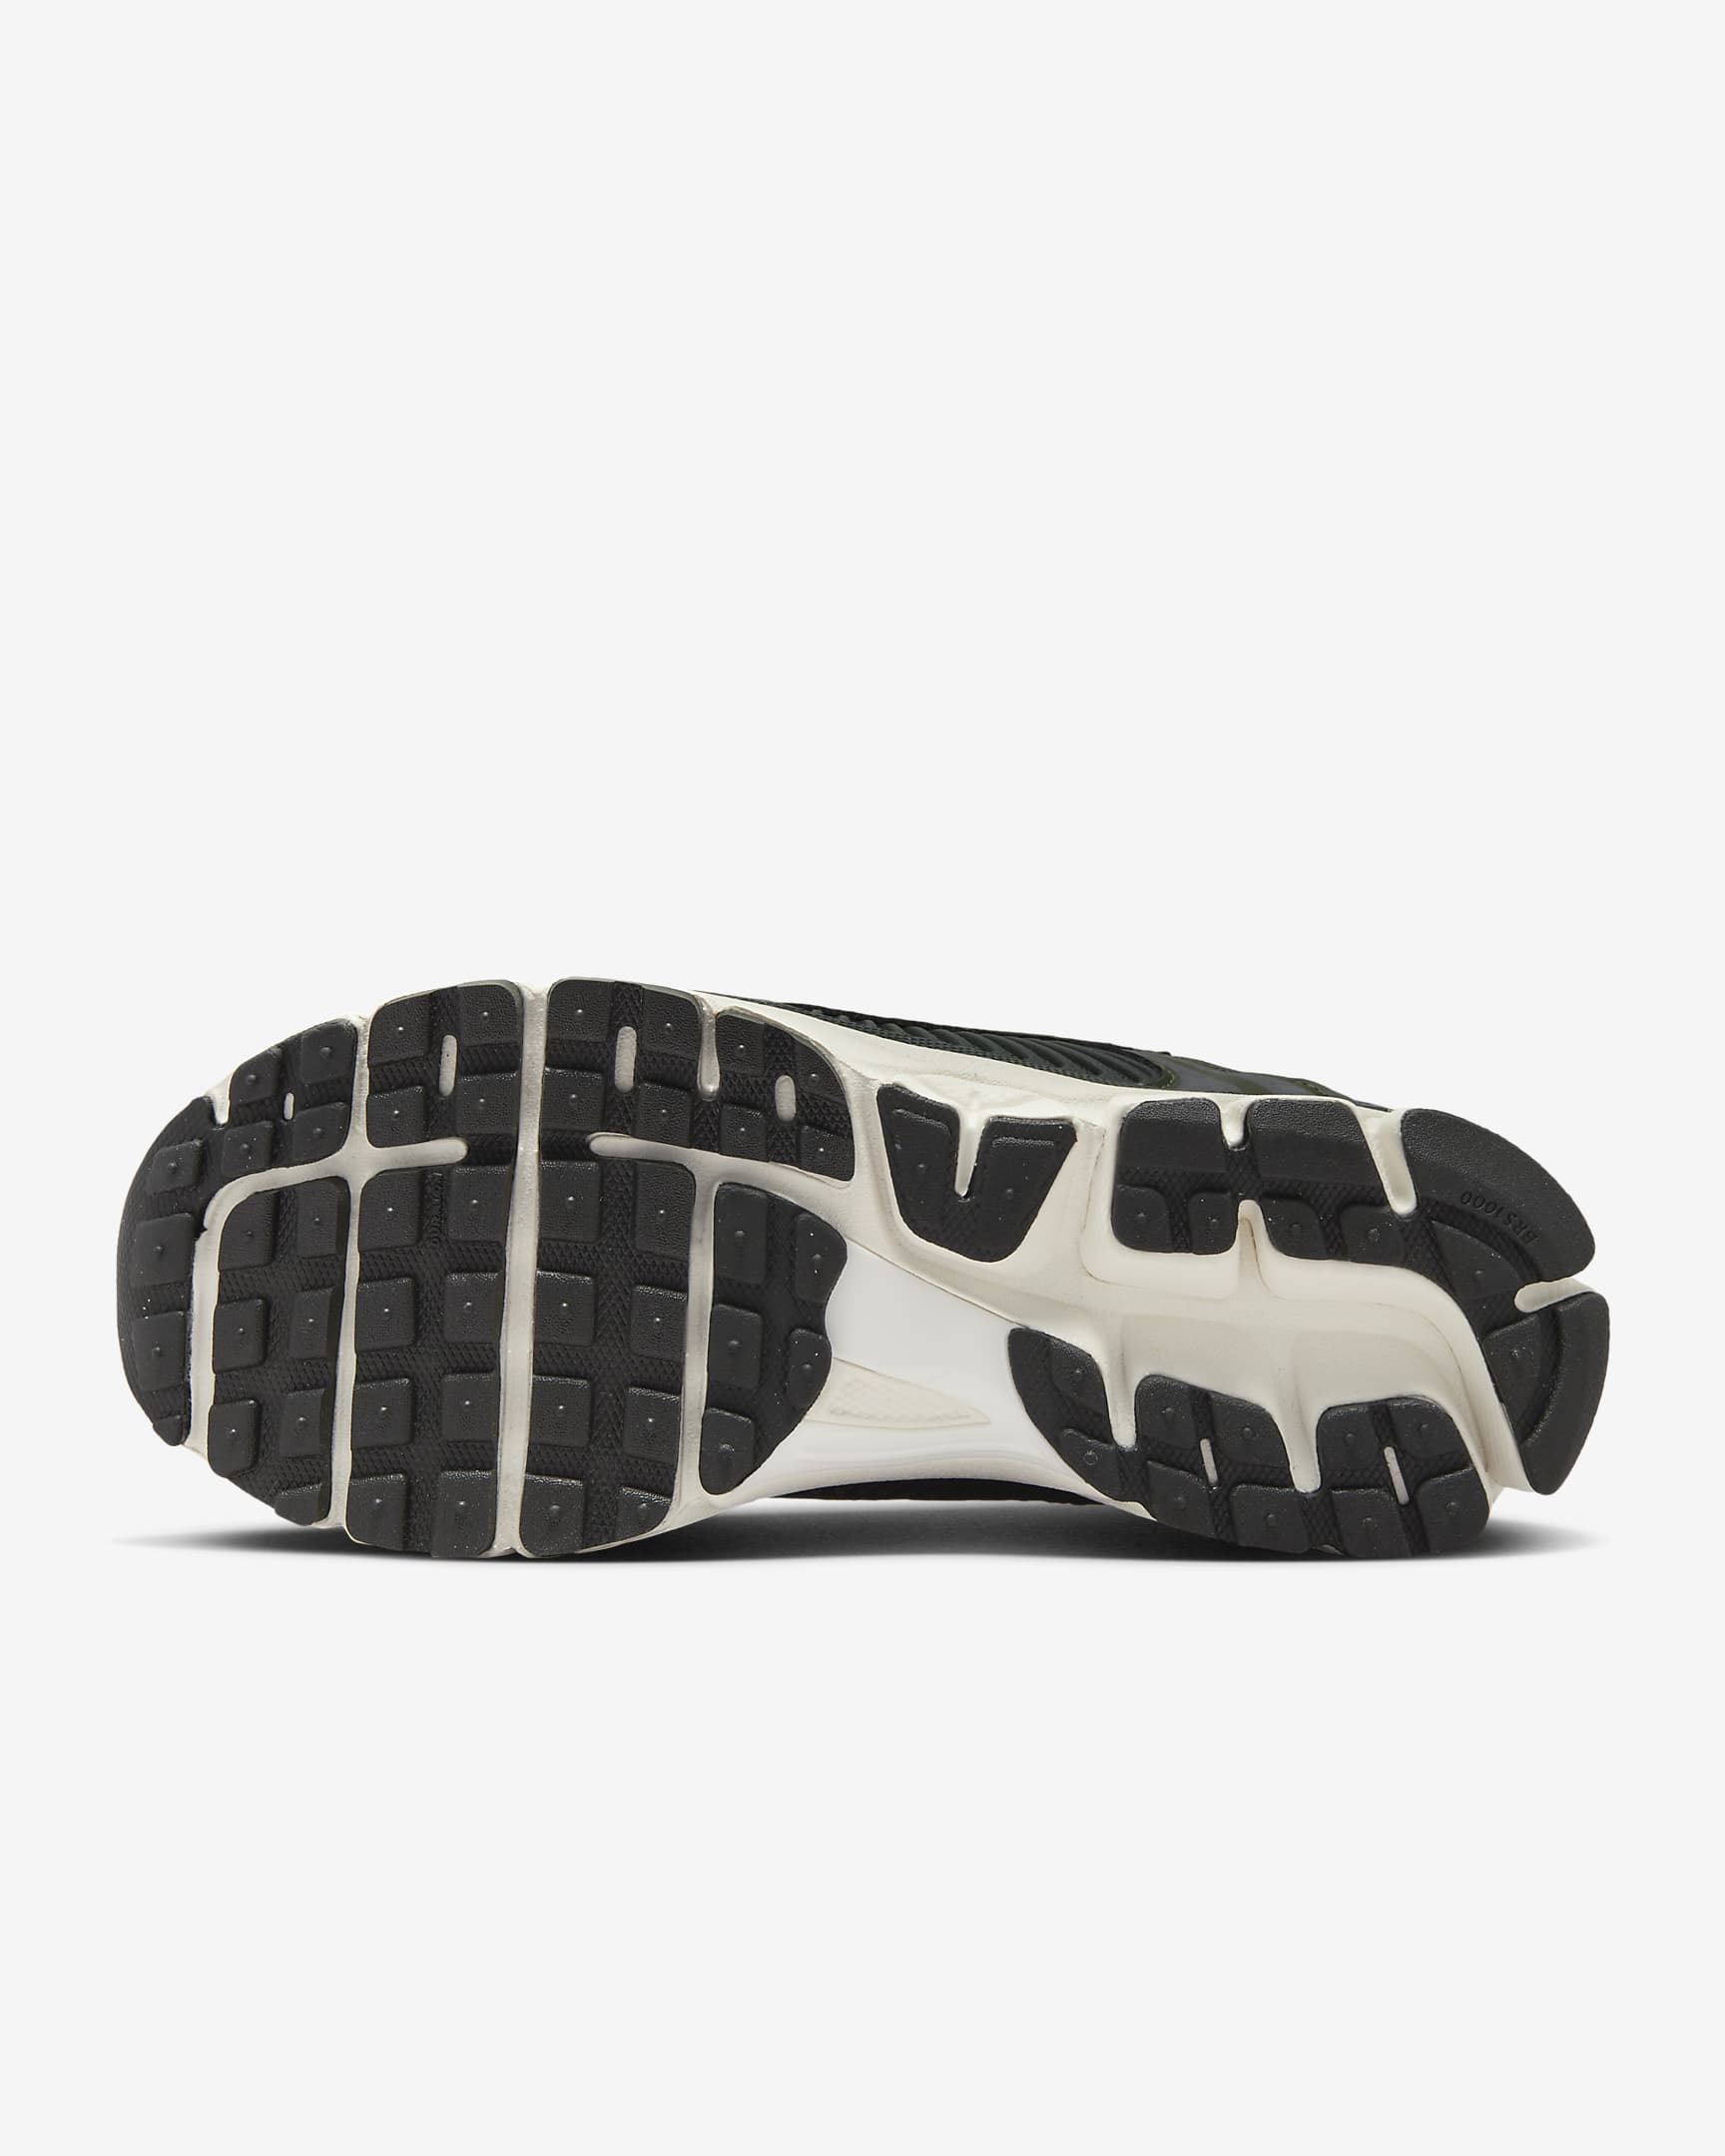 Nike Zoom Vomero 5 Women's Shoes - Cargo Khaki/Sail/Metallic Silver/Sequoia